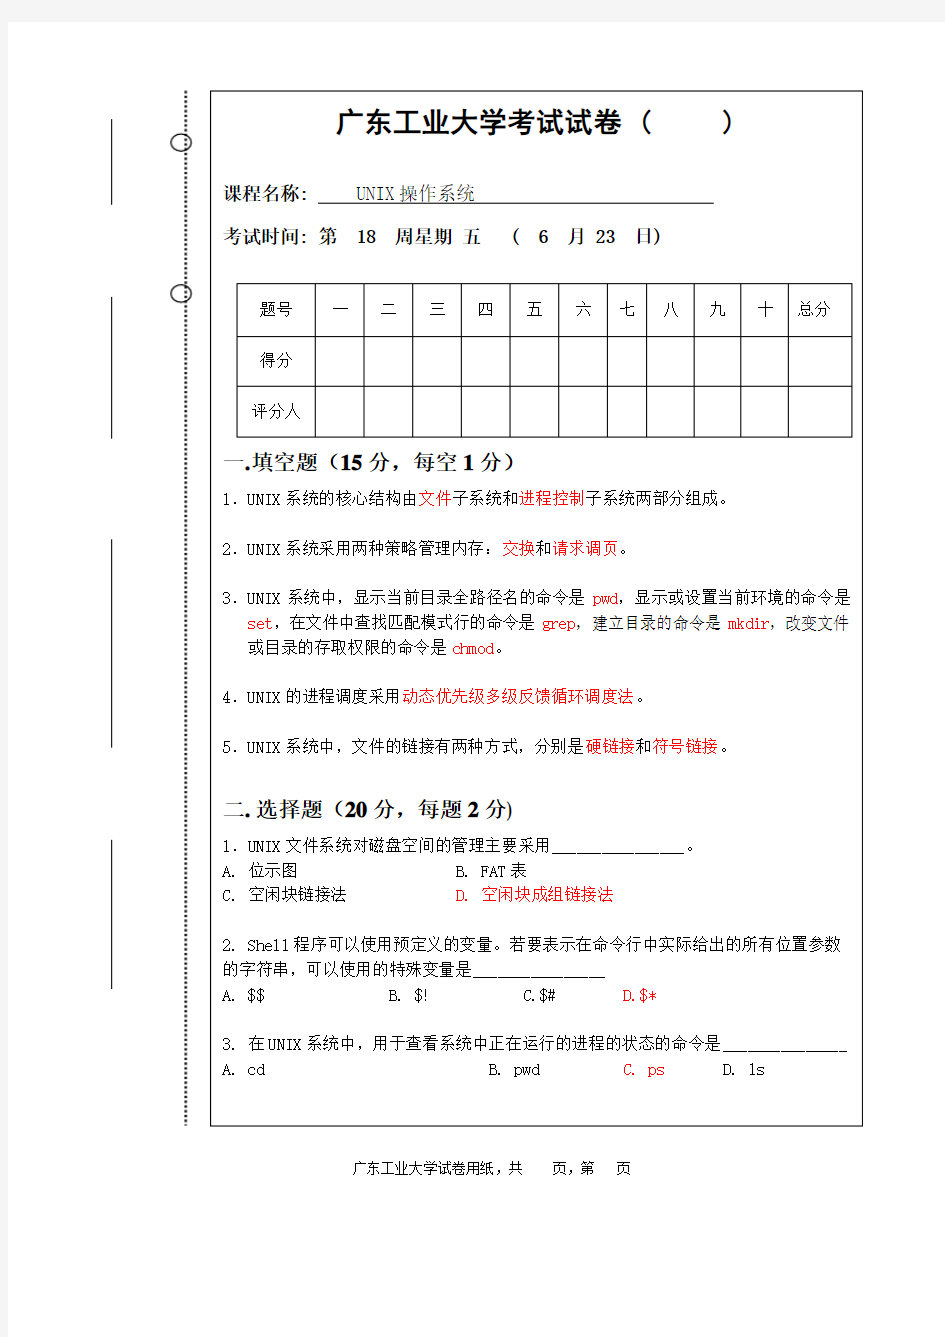 广东工业大学UNIX操作系统试卷